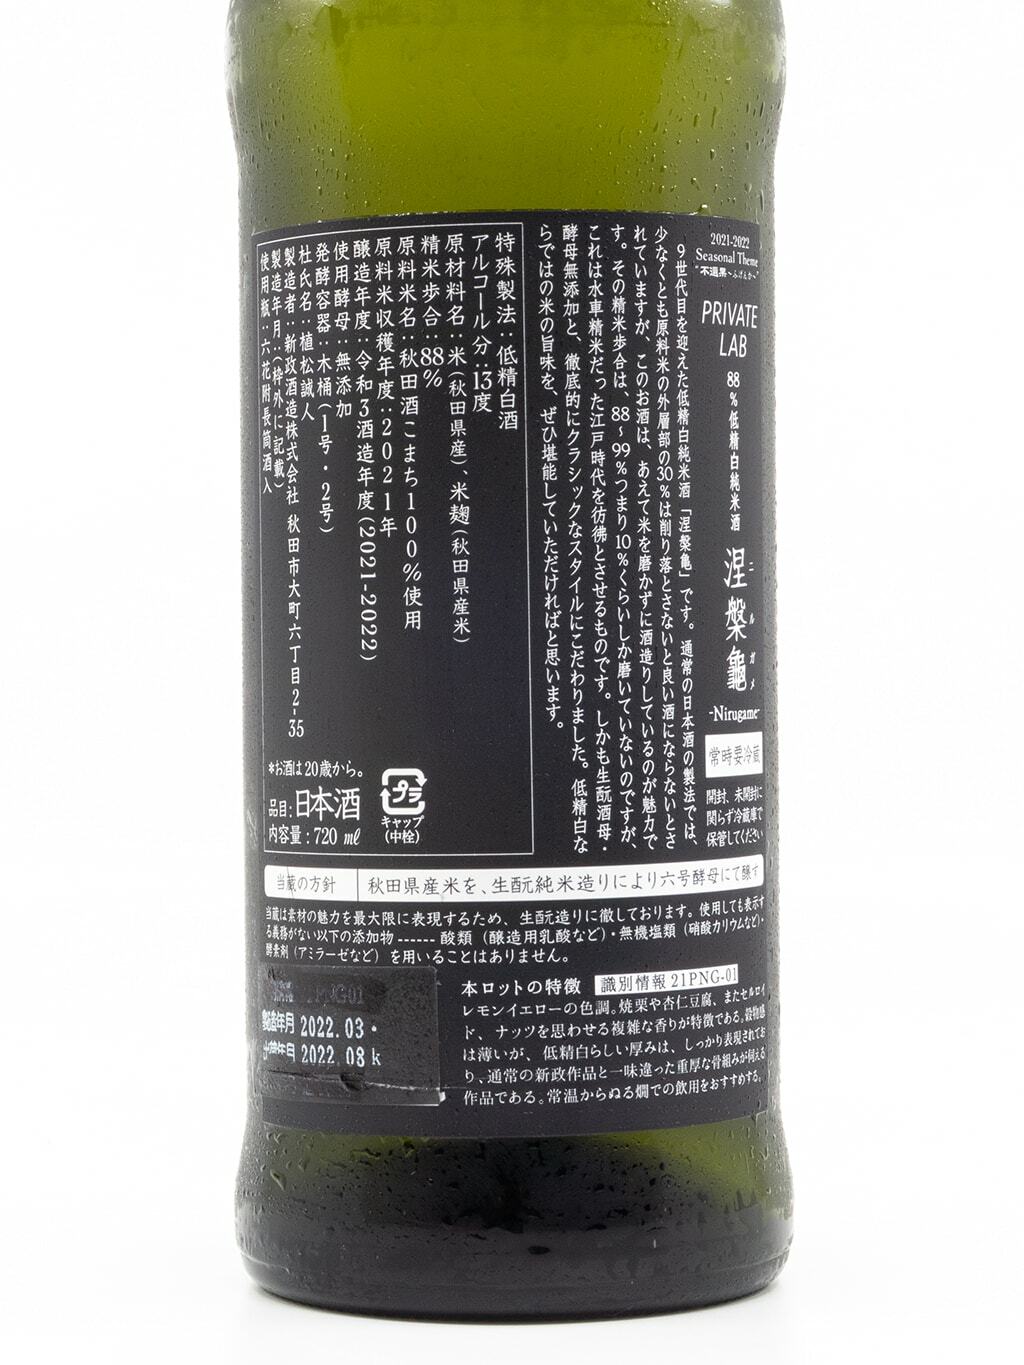 新政Private Lab 涅槃龜88%低精白純米酒720ml | 酒蛙Sakewa | 日本酒專門